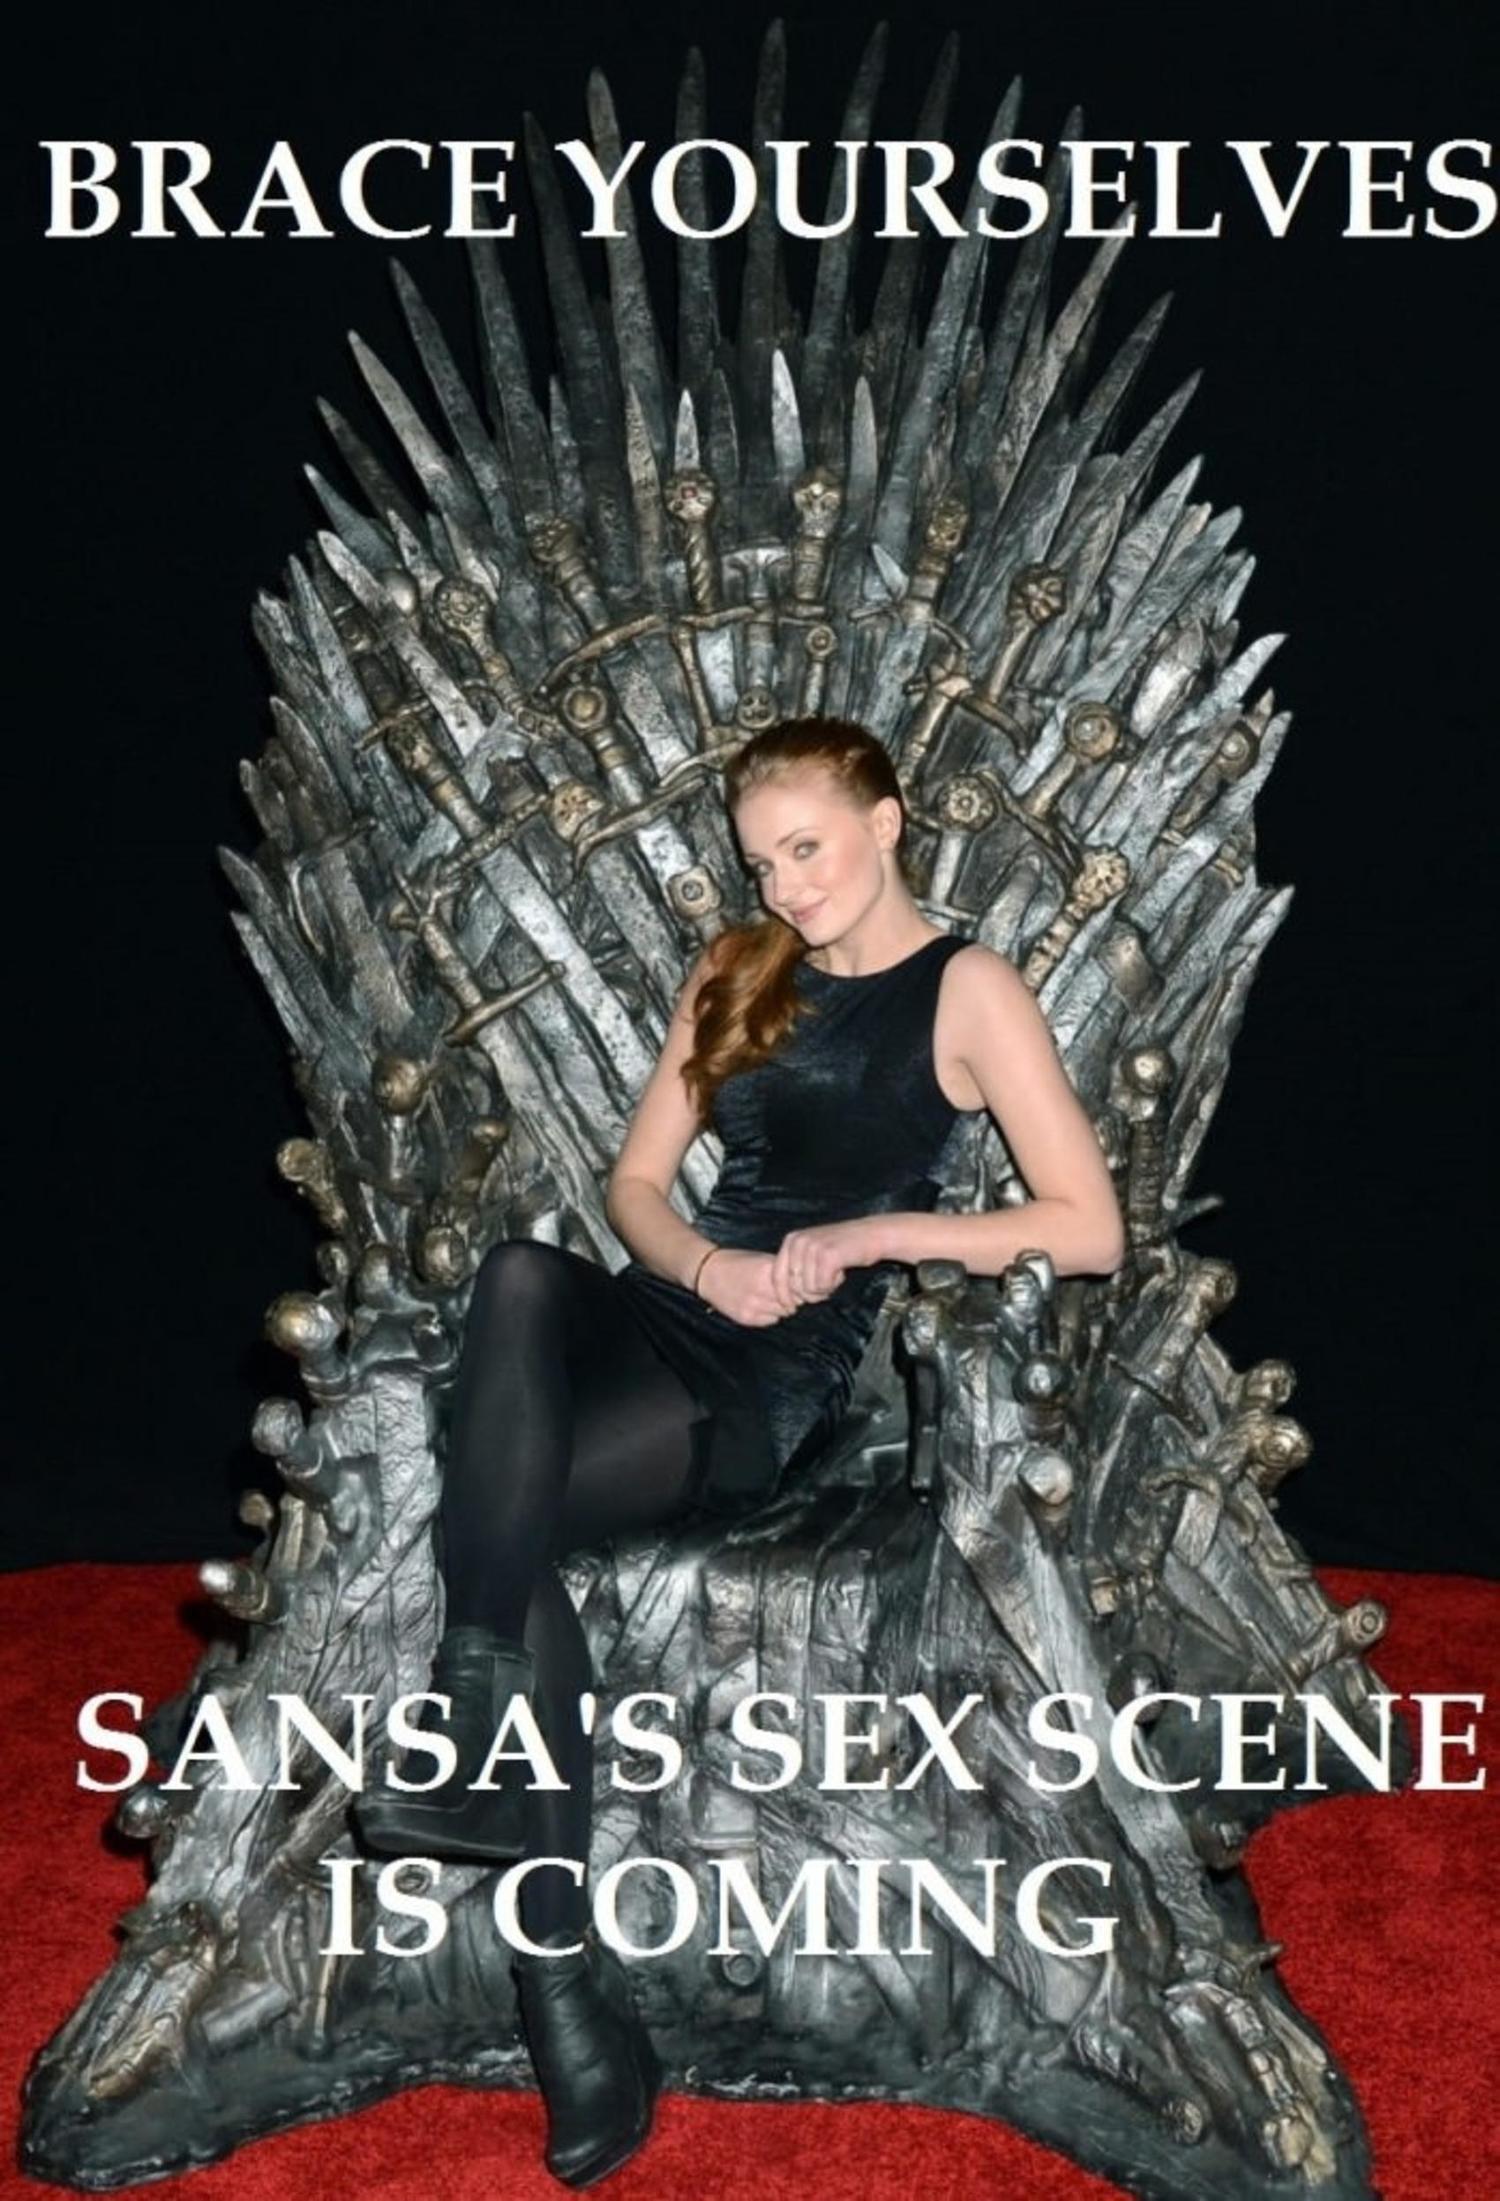 Sansa's sex scene